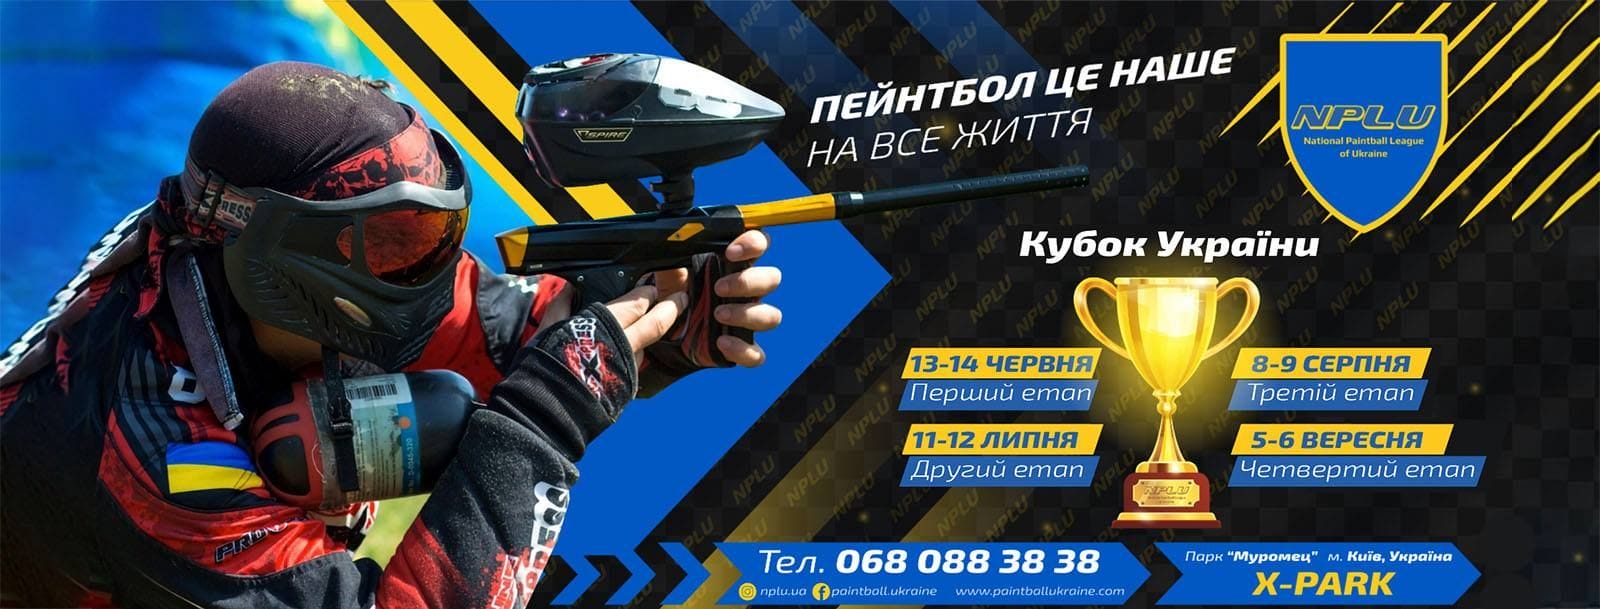 8-9 августа 3 этап Открытого Кубка Украины по спорт пейнтболу